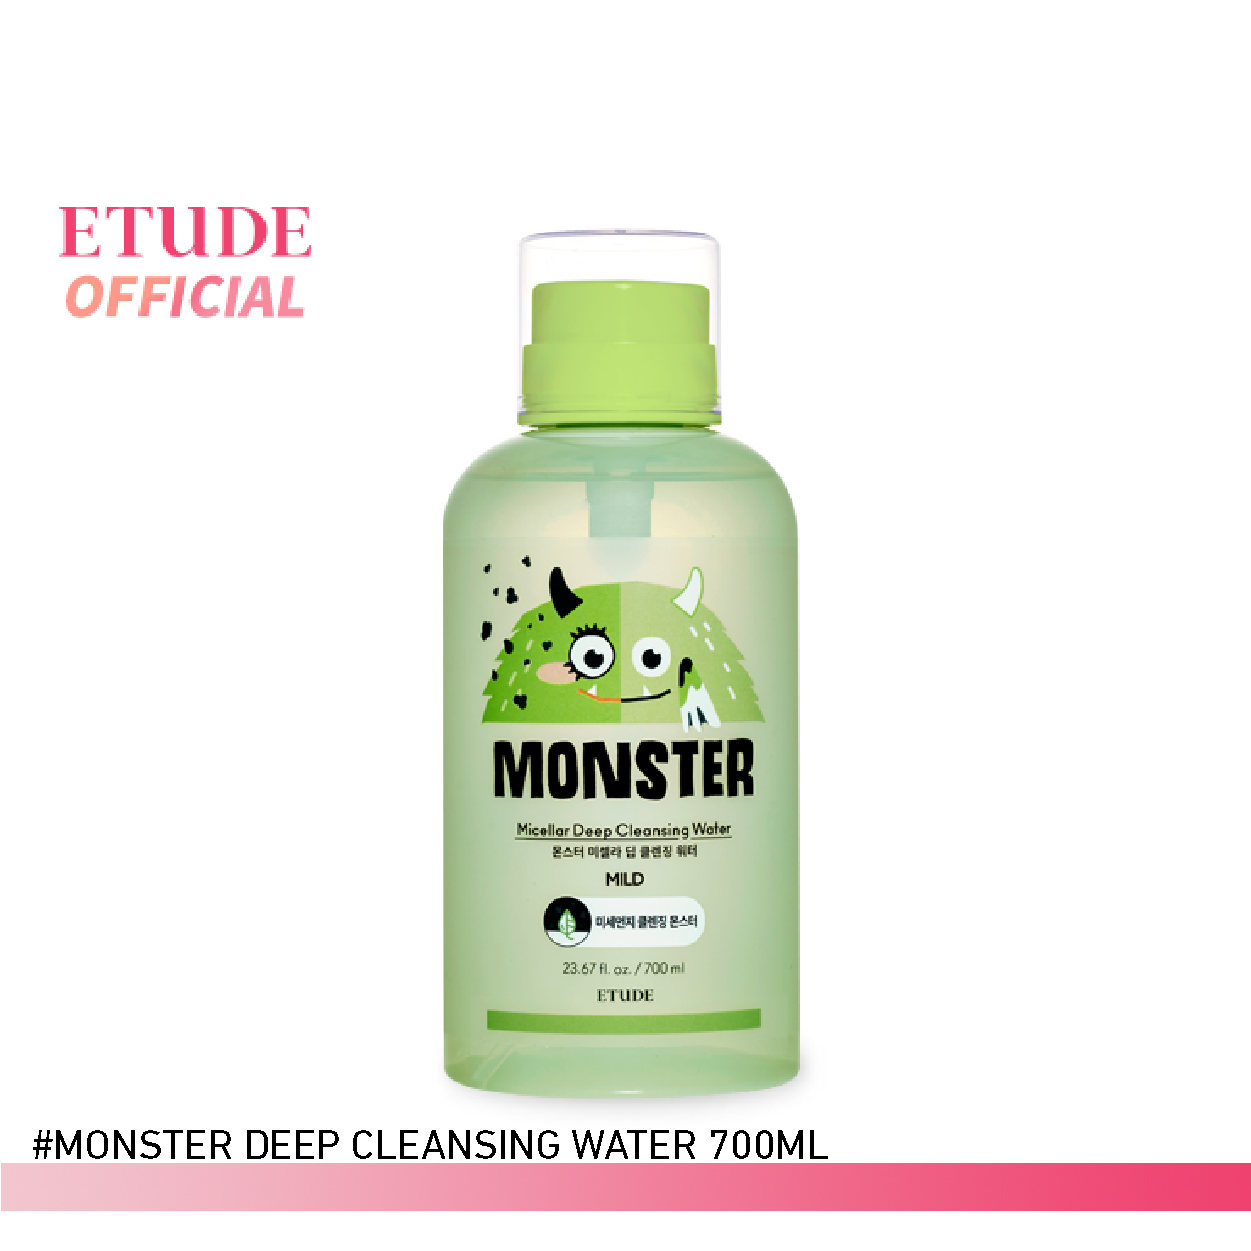 ETUDE Monster Micellar Deep Cleansing Water (700 ml) อีทูดี้ (ผลิตภัณฑ์เช็ดทำความสะอาดเครื่องสำอางสูตรอ่อนโยน)